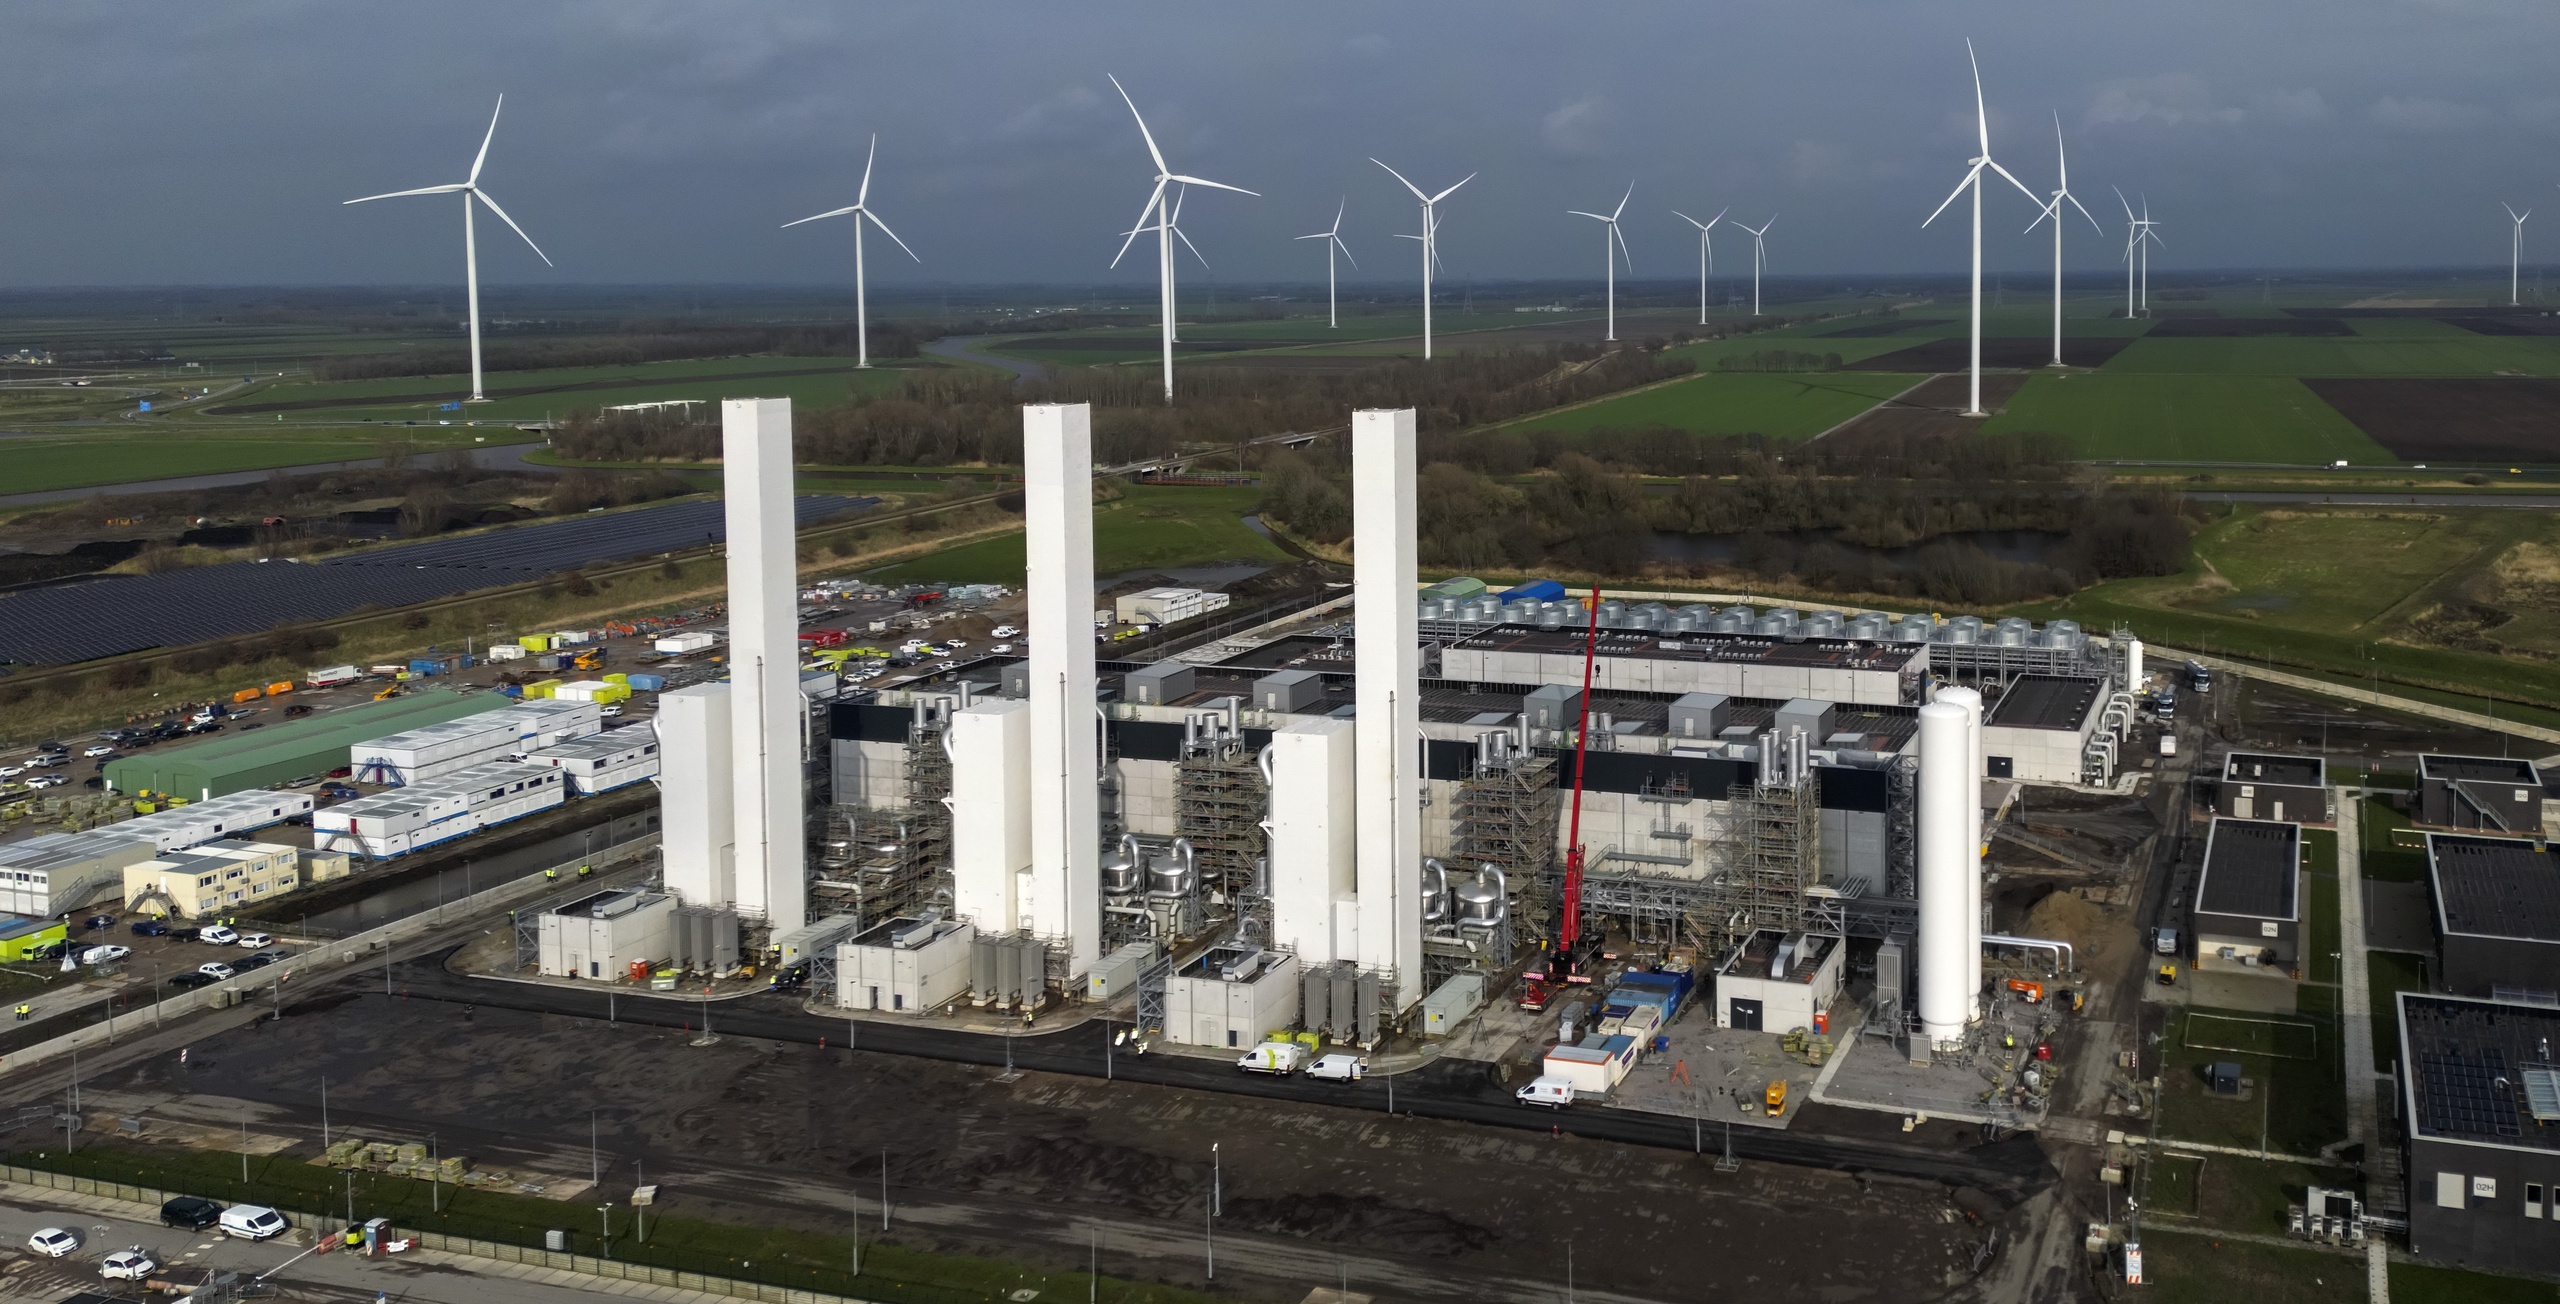 Het gasveld in Groningen moet al dit jaar volledig dicht, vindt topvrouw Marjan van Loon van Shell Nederland. Op dit moment levert het gasveld nog minimale hoeveelheden gas om de boorputten bruikbaar te houden, maar dat is volgens haar niet nodig. 'Het kan en het moet, dus het veld moet dicht', zei Van Loon in het programma WNL Op Zondag.